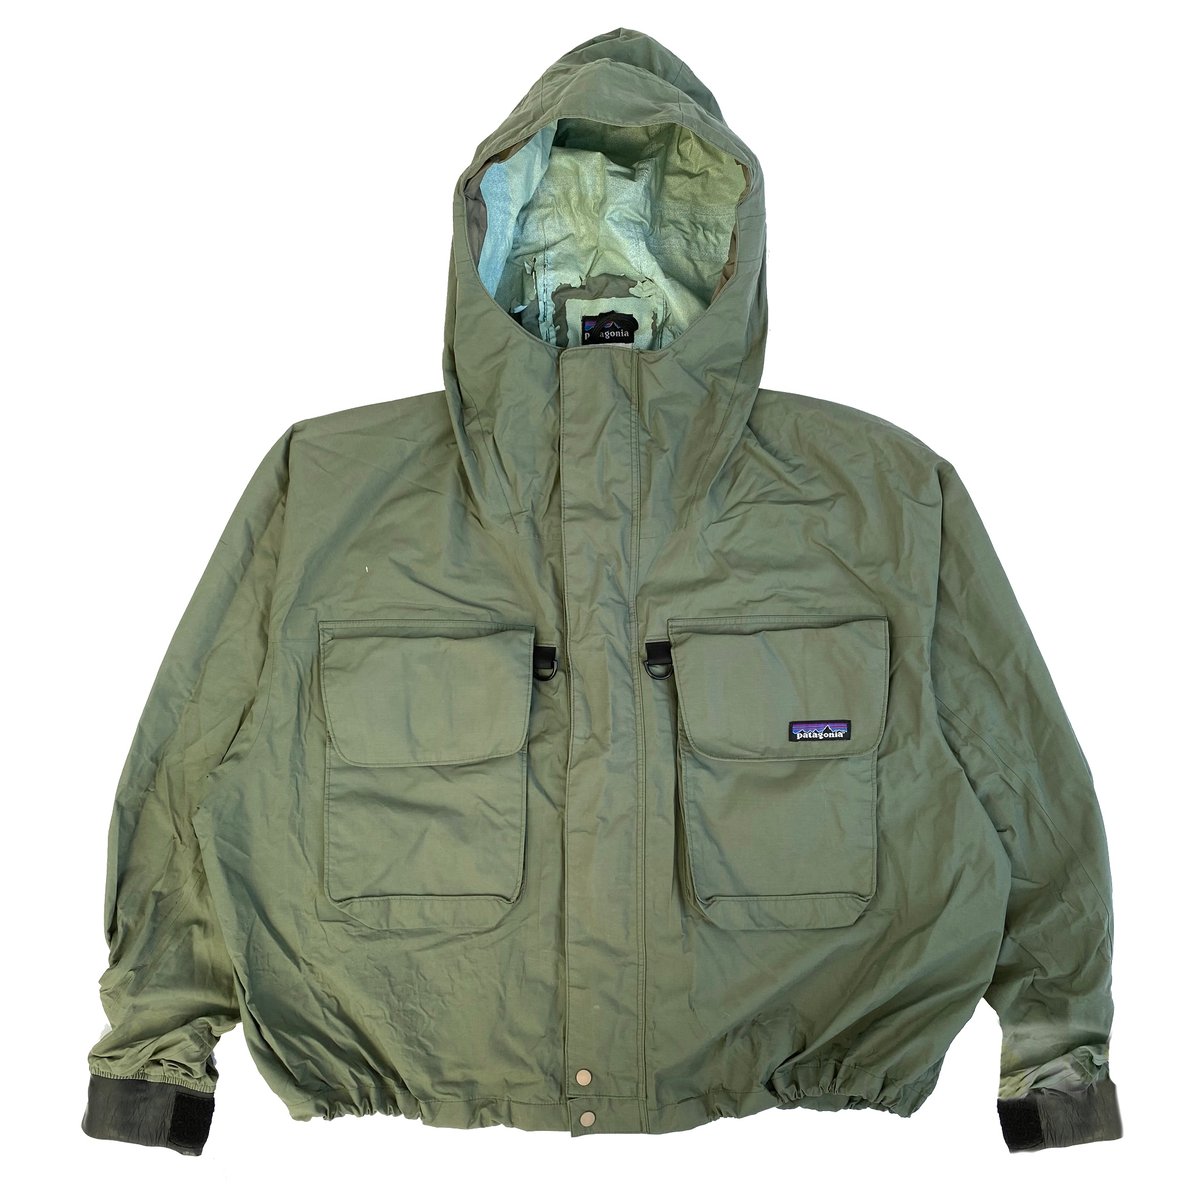 17,800円90s patagonia SST deep wading jacket